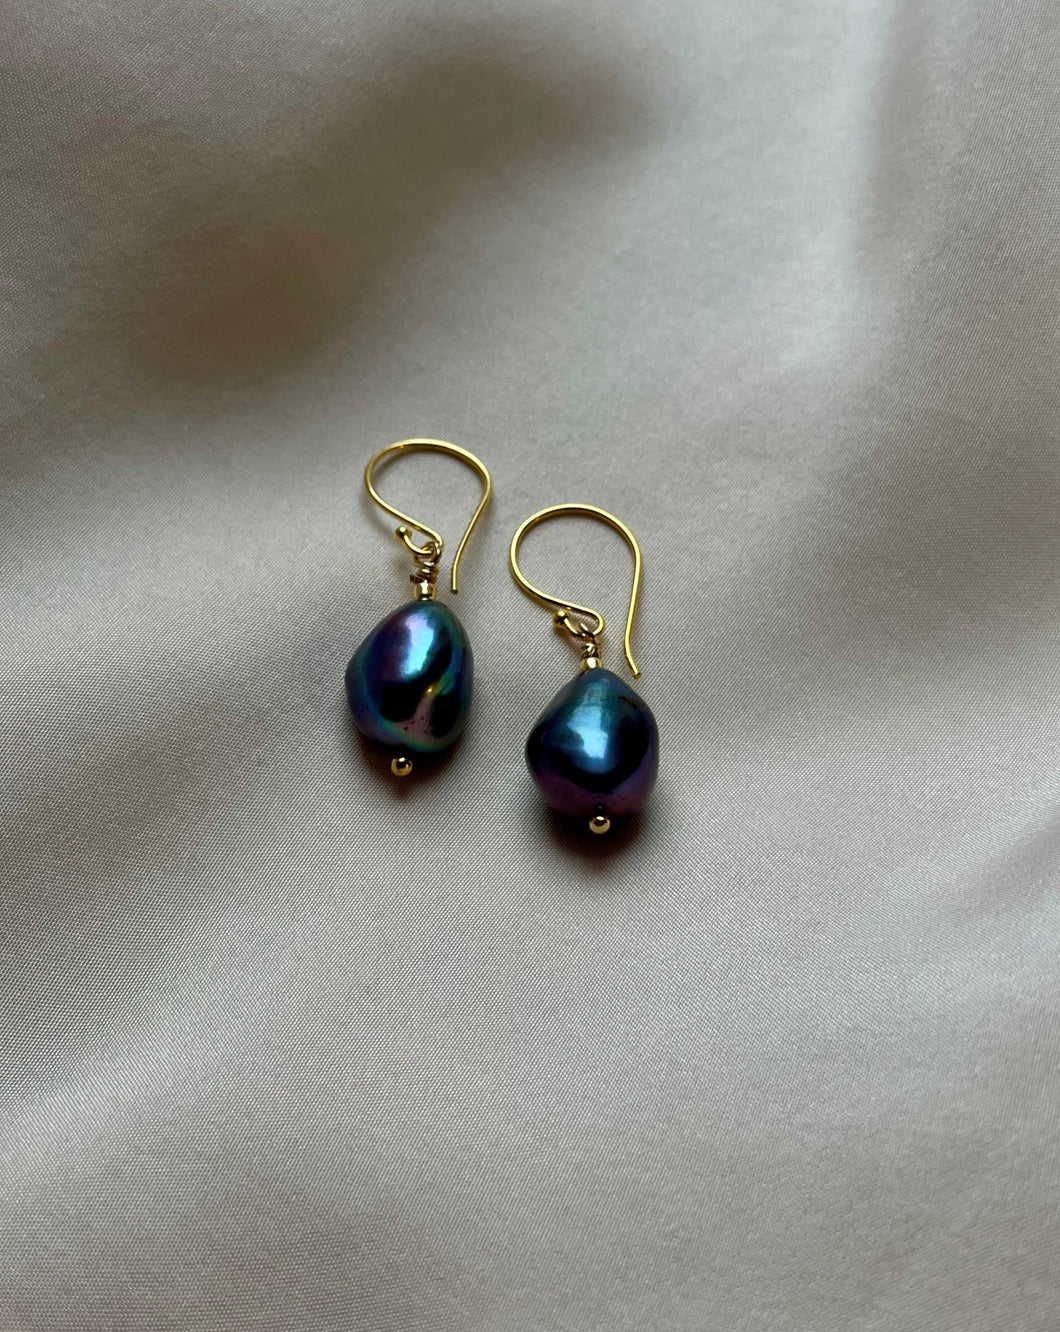 Freshwater pearl earrings in Black